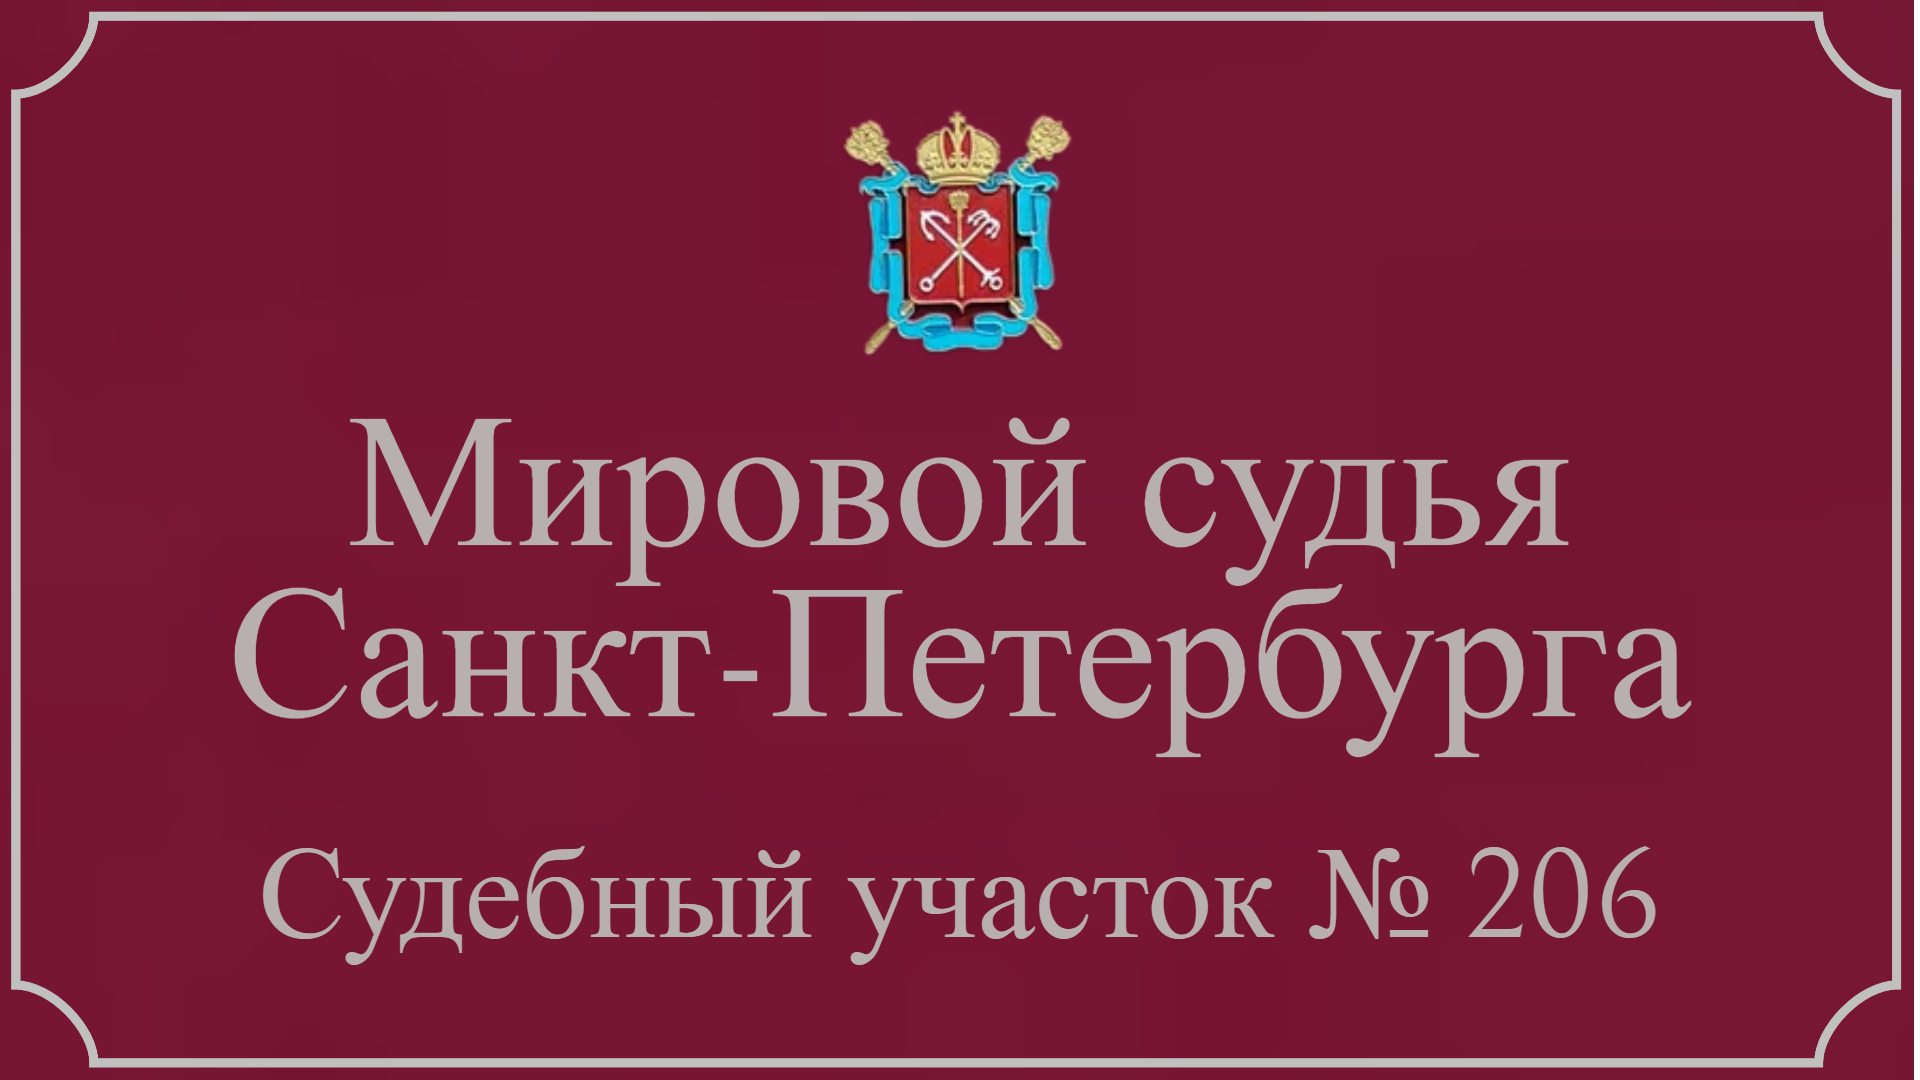 Информация по 206 судебному участку в Санкт-Петербурге.